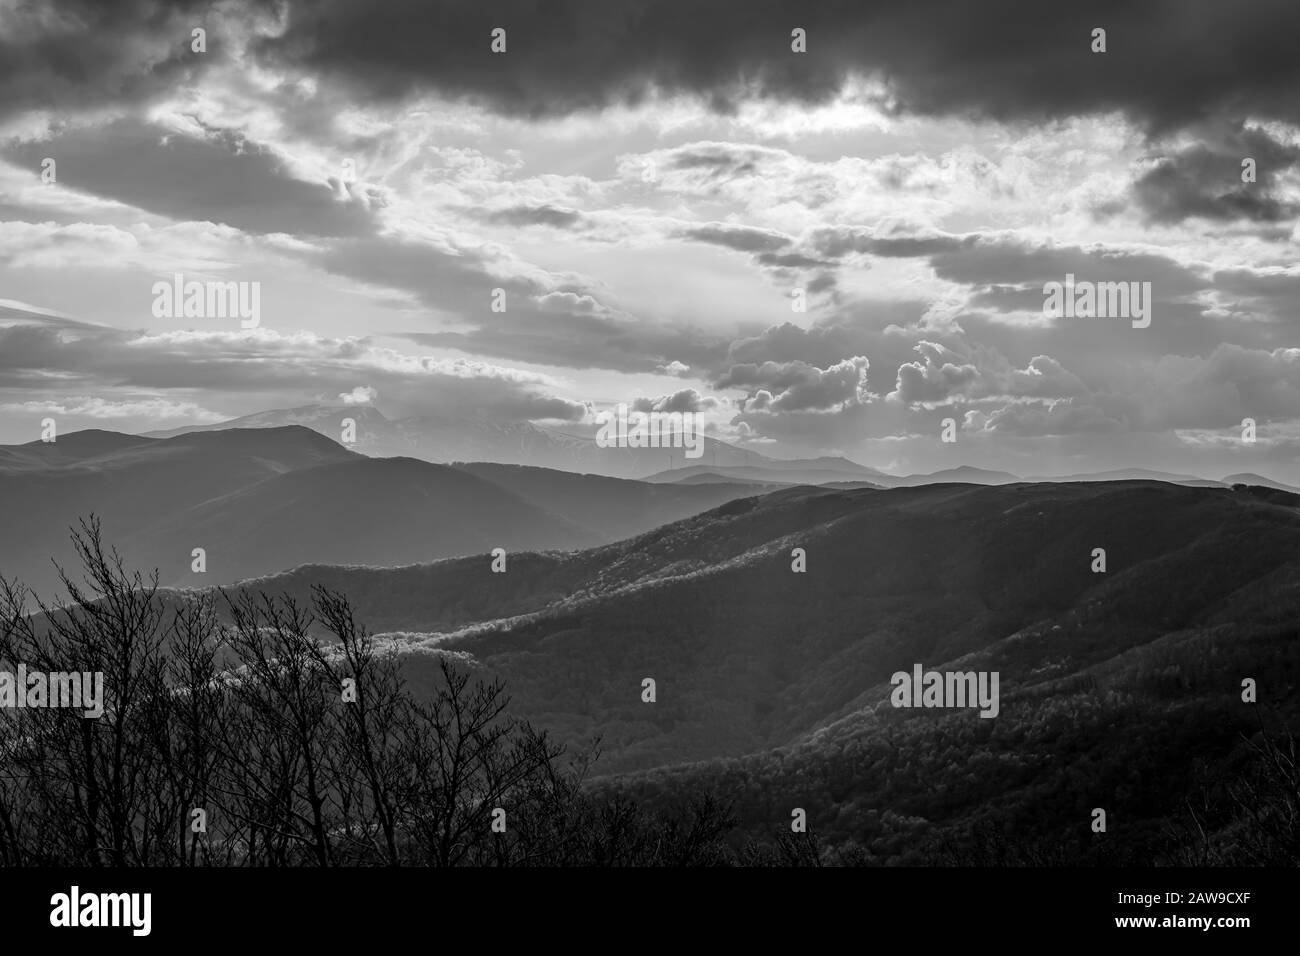 Vue spectaculaire en noir et blanc d'automne sur la chaîne de montagnes depuis le sommet de Shipka, la montagne Stara Planina dans le centre de la Bulgarie, vue depuis le mémorial de Shipka. Sensation d'humeur Banque D'Images